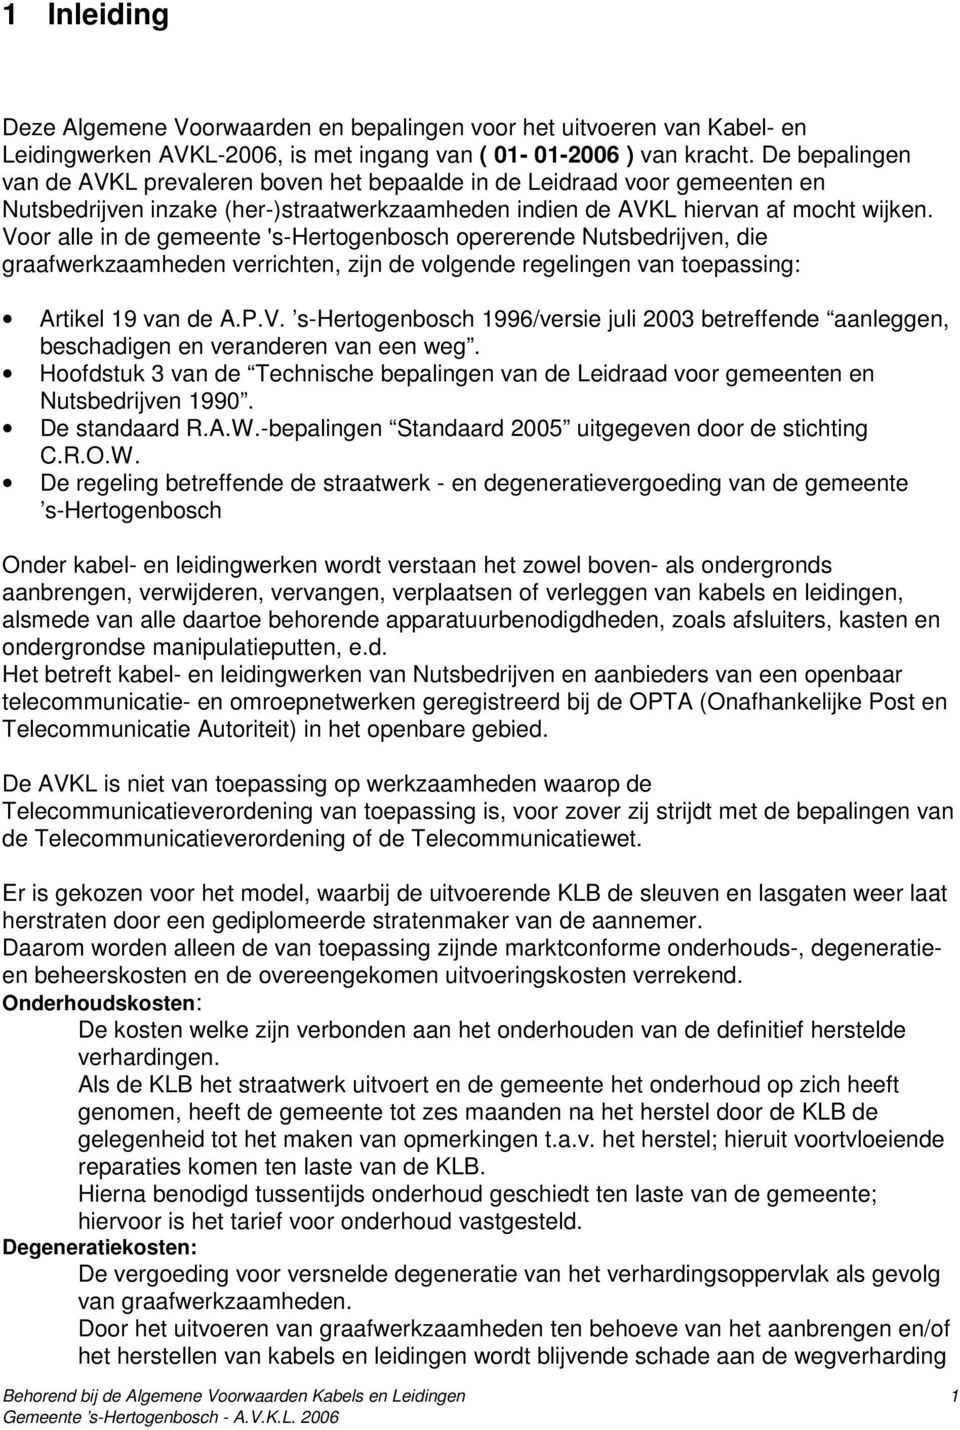 Voor alle in de gemeente 's-hertogenbosch opererende Nutsbedrijven, die graafwerkzaamheden verrichten, zijn de volgende regelingen van toepassing: Artikel 19 van de A.P.V. s-hertogenbosch 1996/versie juli 2003 betreffende aanleggen, beschadigen en veranderen van een weg.